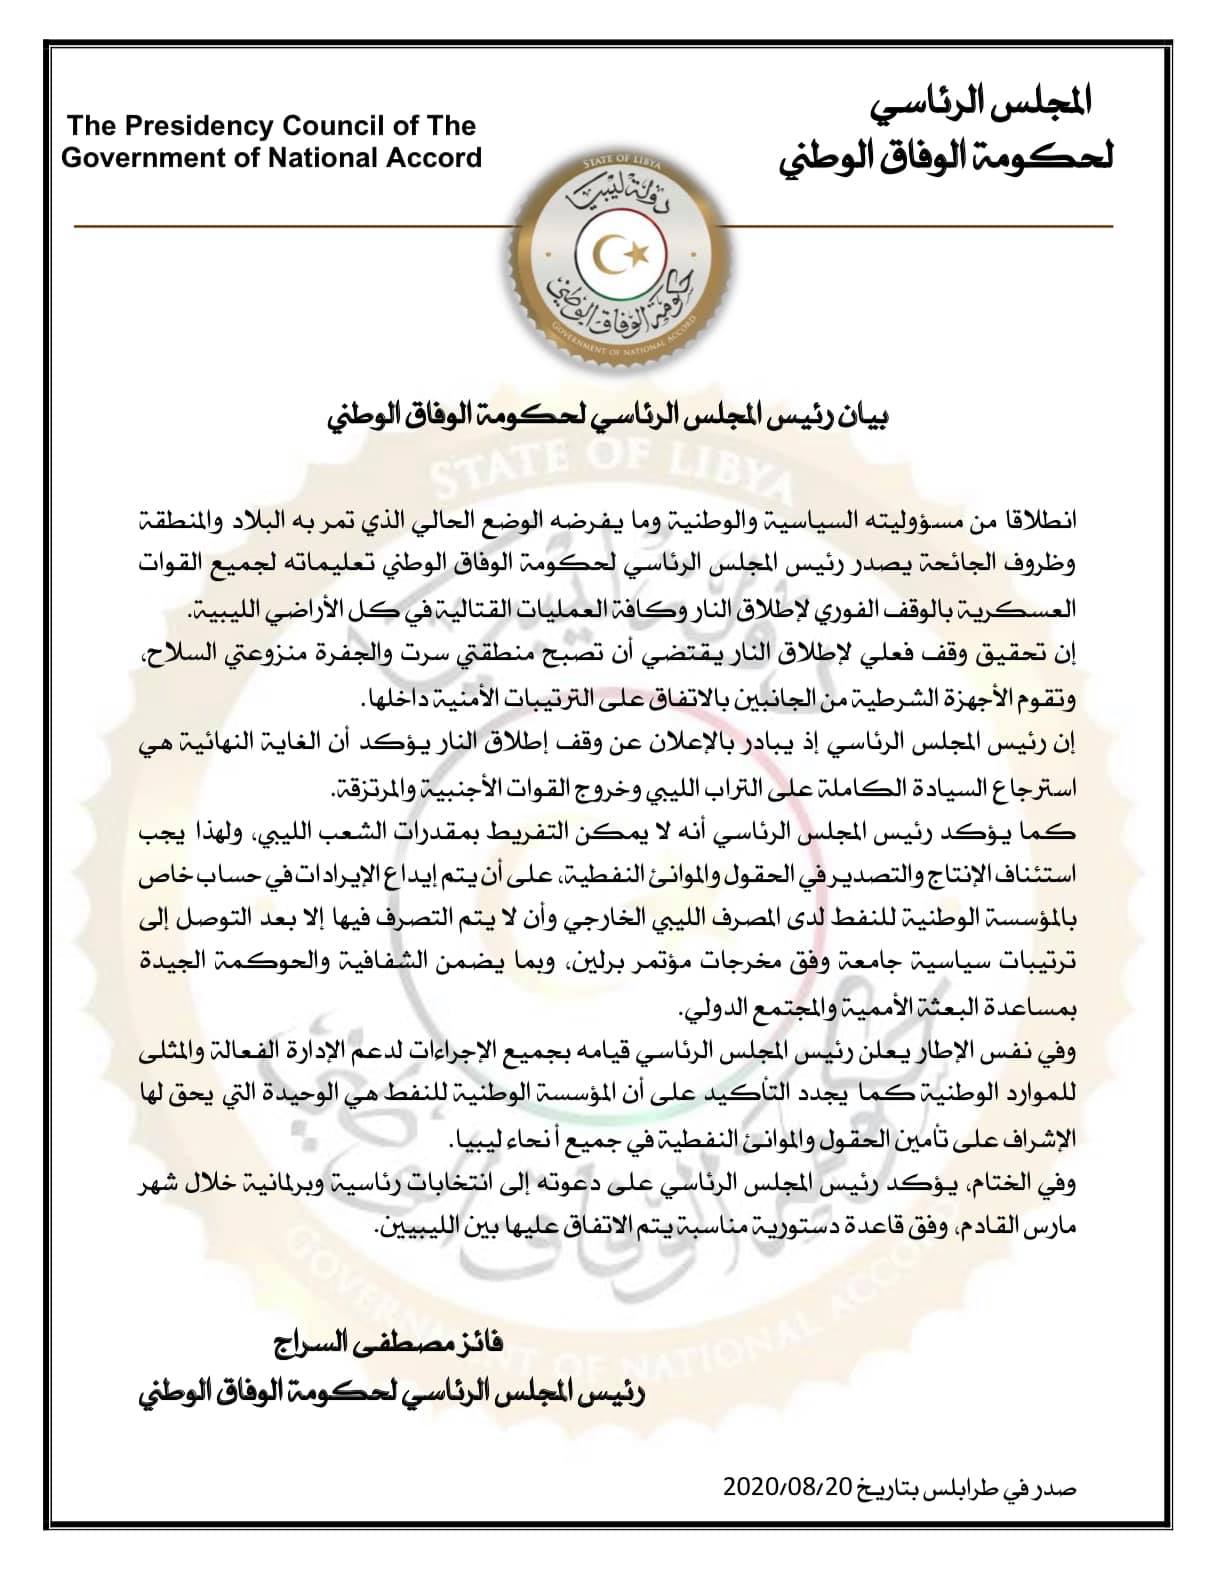 بيان المجلس الأعلى للدولة في ليبيا (حكومة الوفاق الوطني الليبية)